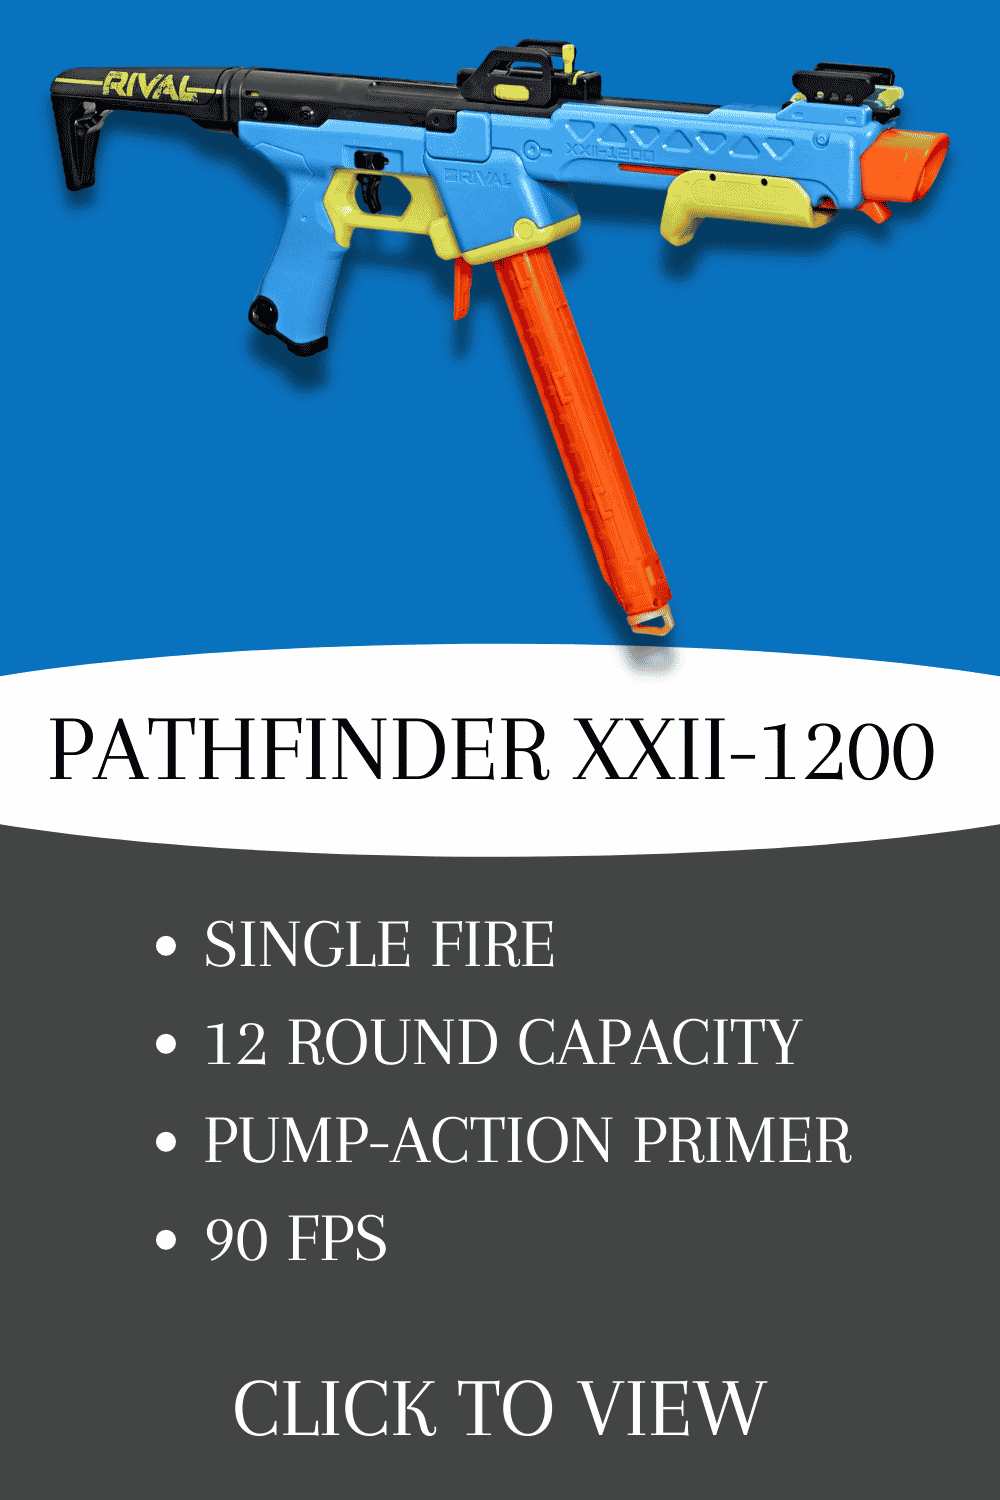 nerf rival pathfinder xxii-1200